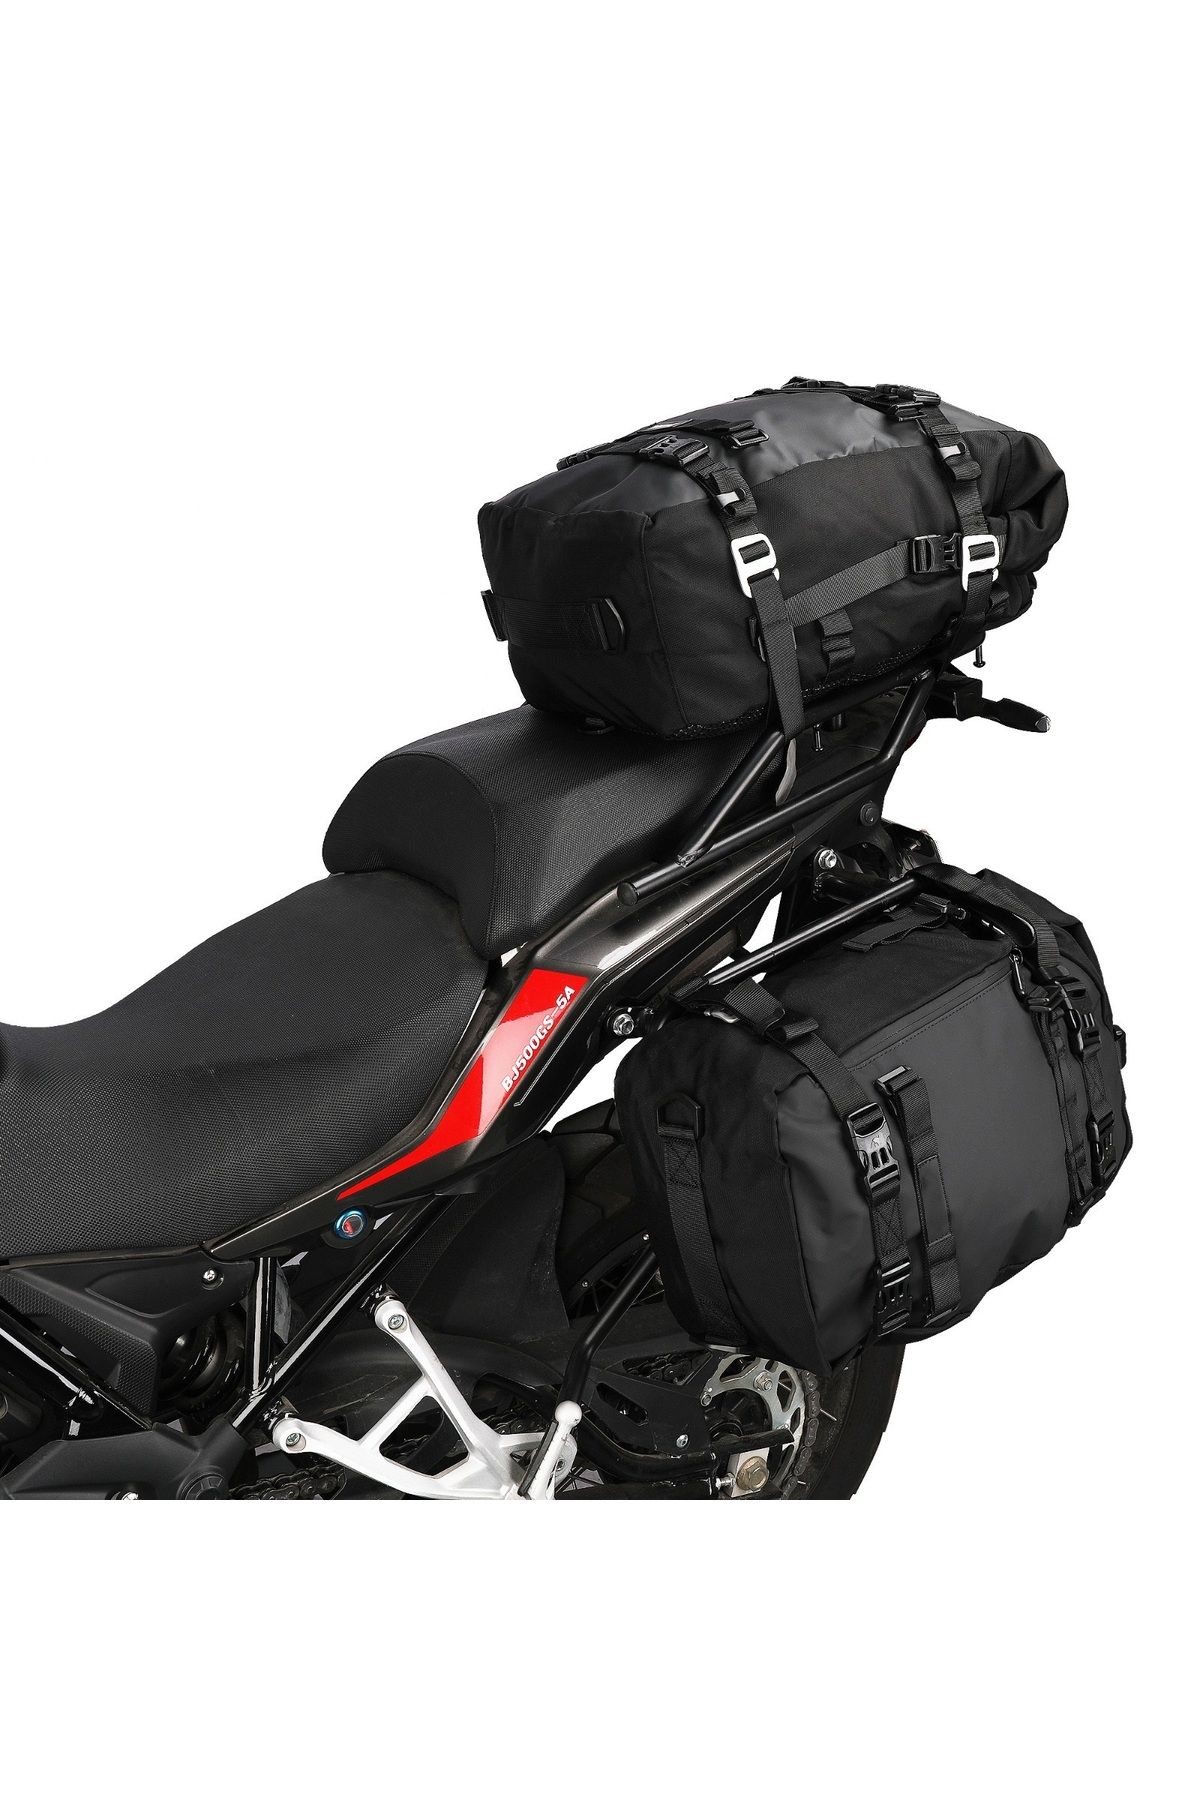 MOTOANL Motosiklet Lüx Sırt Çantası,Arka ve Yan Çanta Olma Özellikli Waterproof Motor Touring Çanta 30 lt